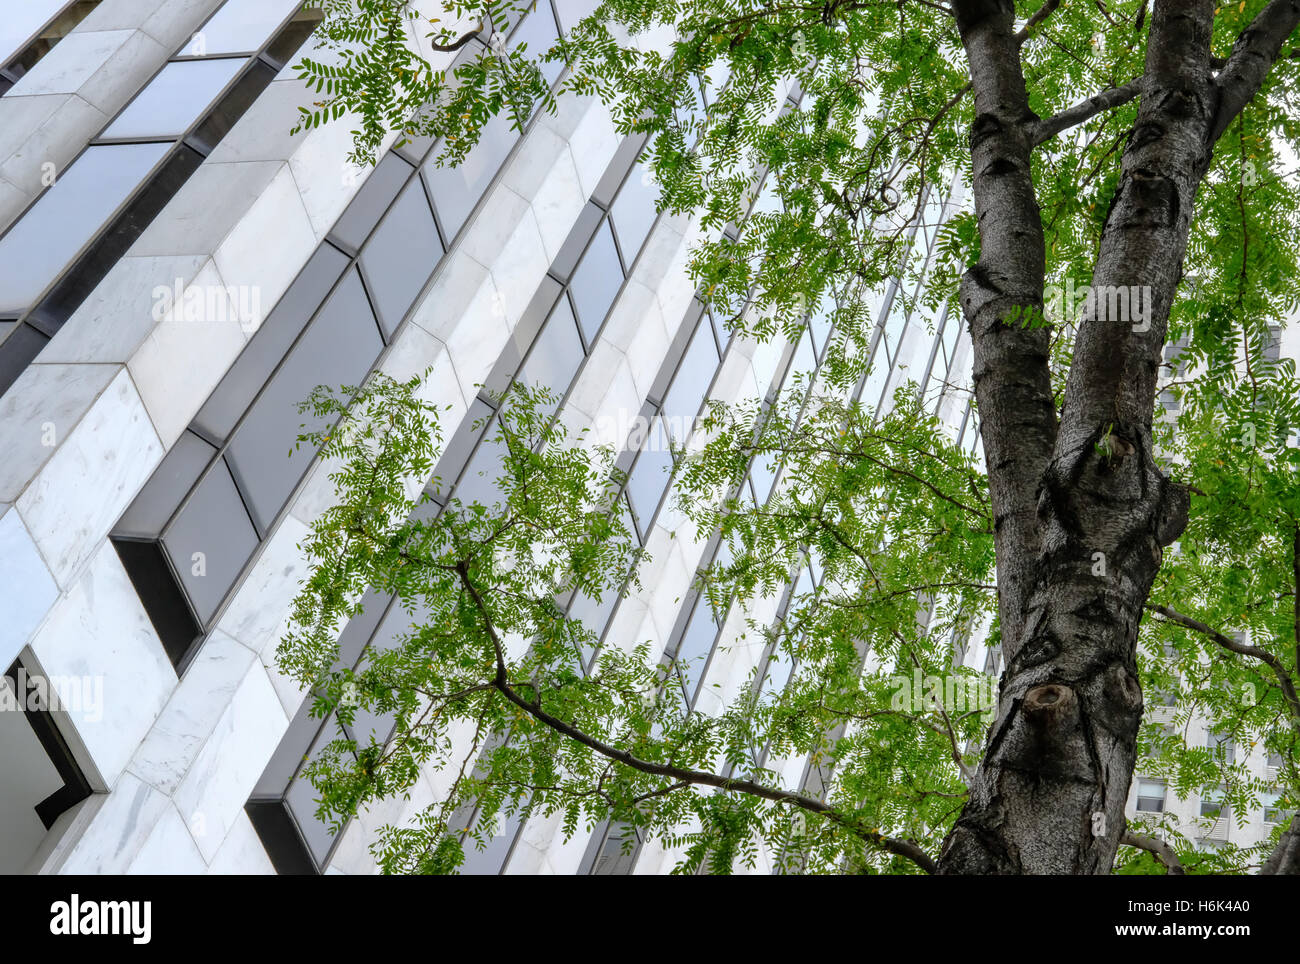 Abstrakte Sicht Von Einem New Yorker Burogebaude Mit Detaillierten Fenster Architektur Mit Einem Grossen Baum Im Vordergrund Zu Sehen Stockfotografie Alamy